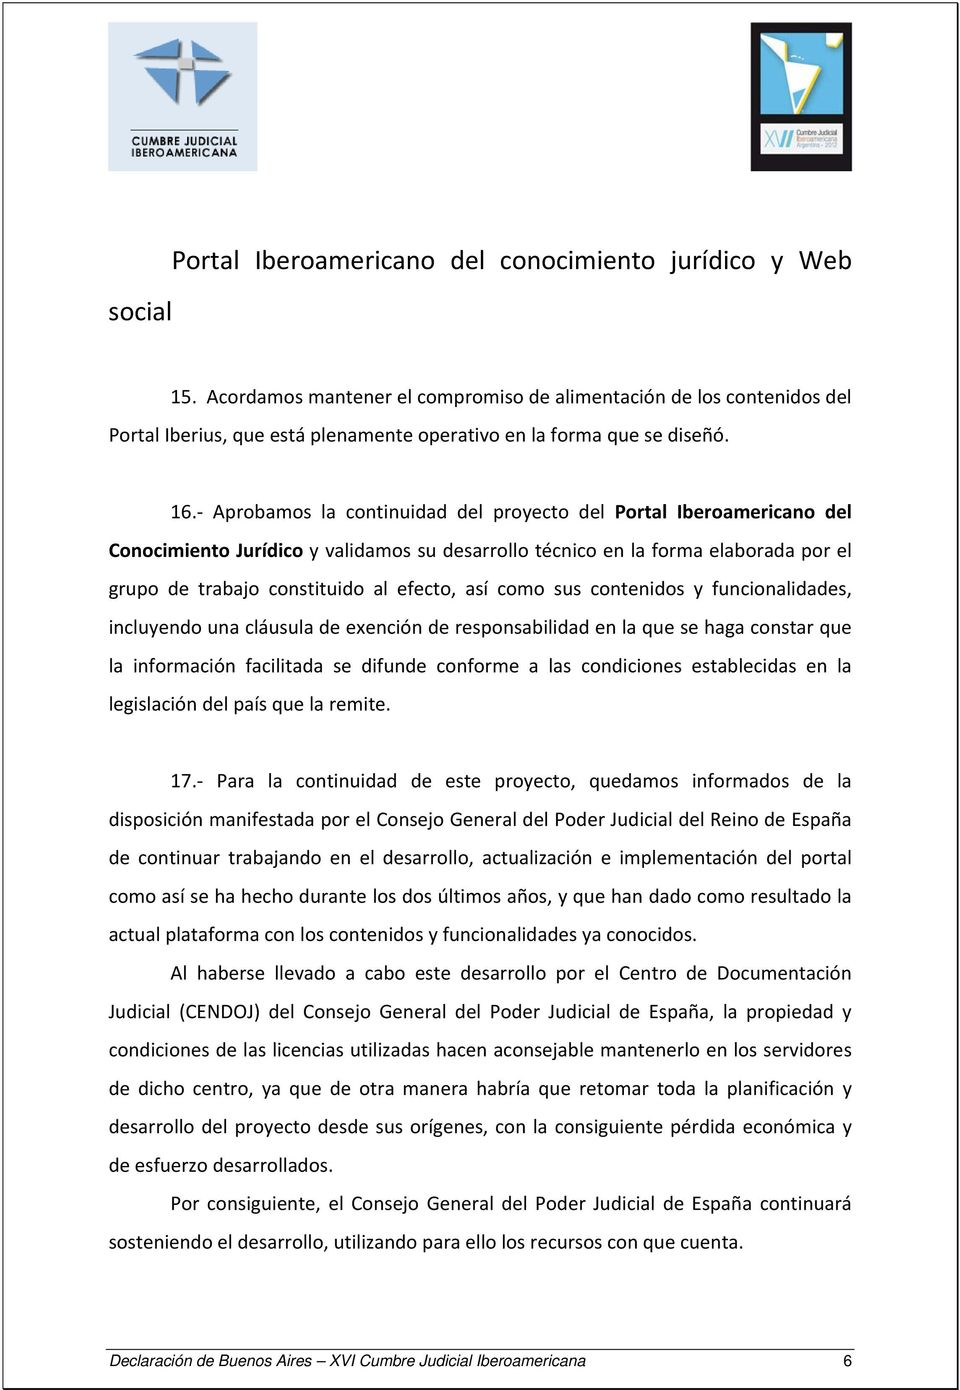 Aprobamos la continuidad del proyecto del Portal Iberoamericano del Conocimiento Jurídico y validamos su desarrollo técnico en la forma elaborada por el grupo de trabajo constituido al efecto, así